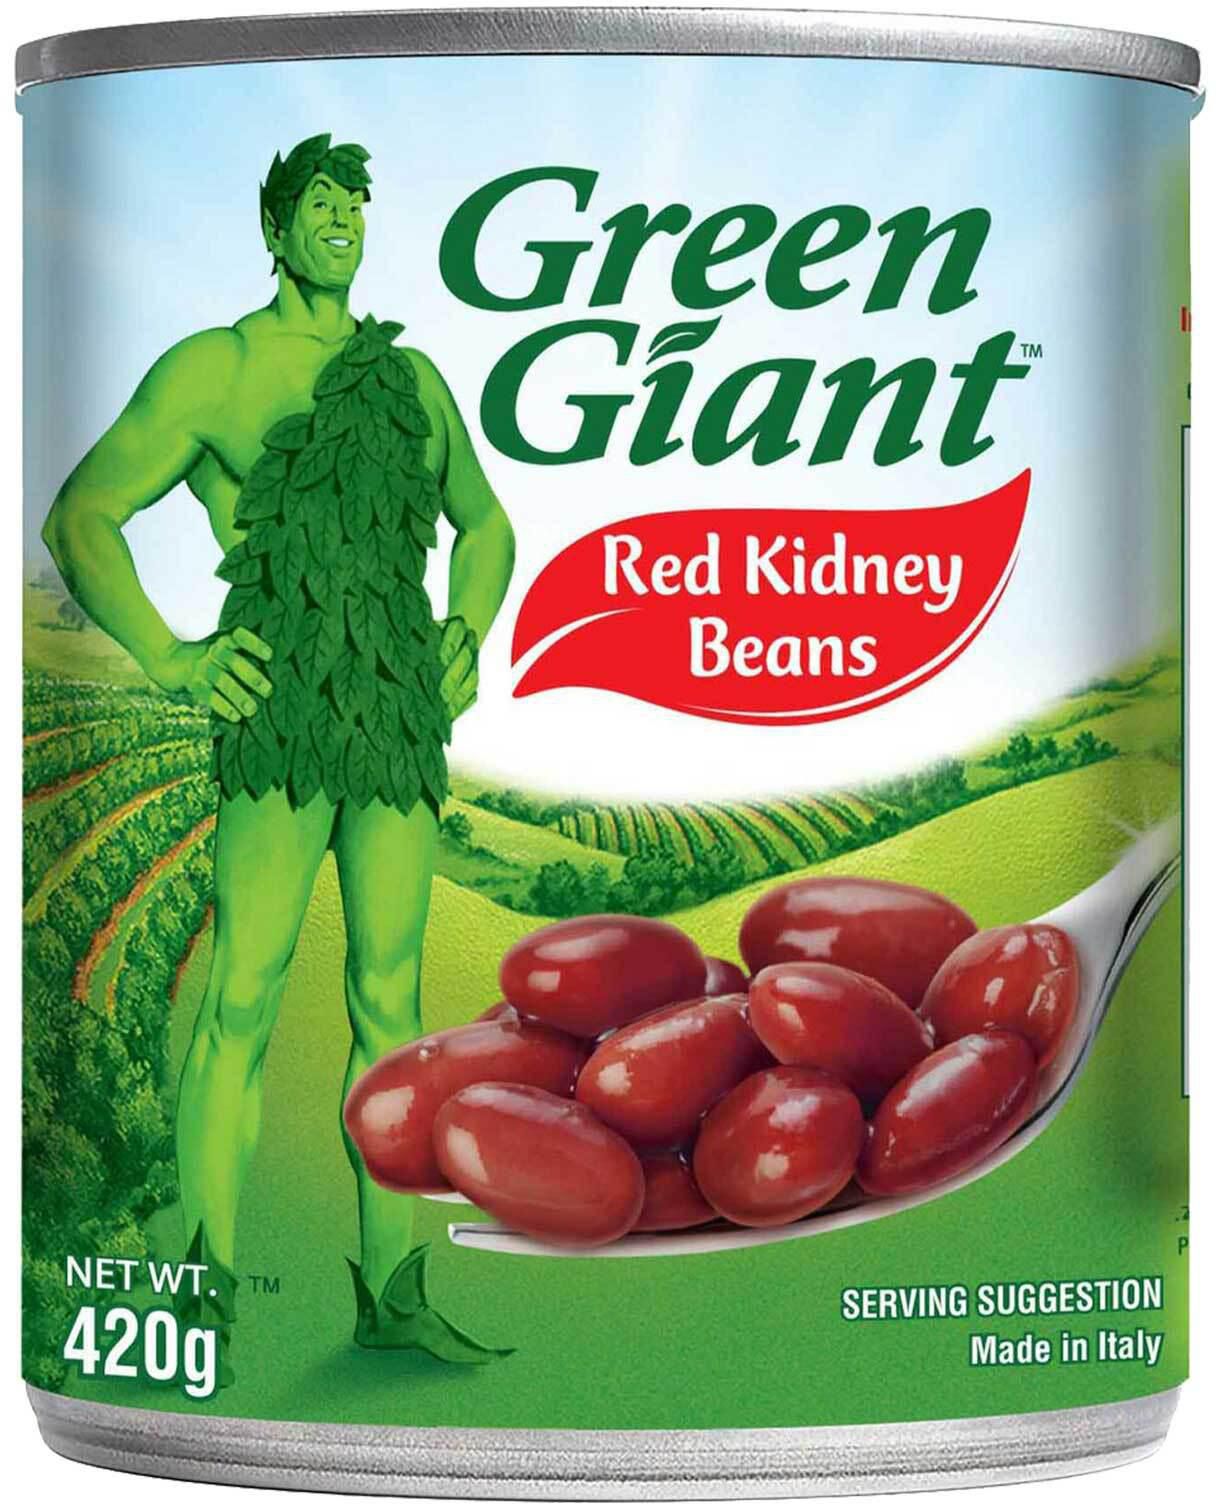 Green giant red kidney beans 420g